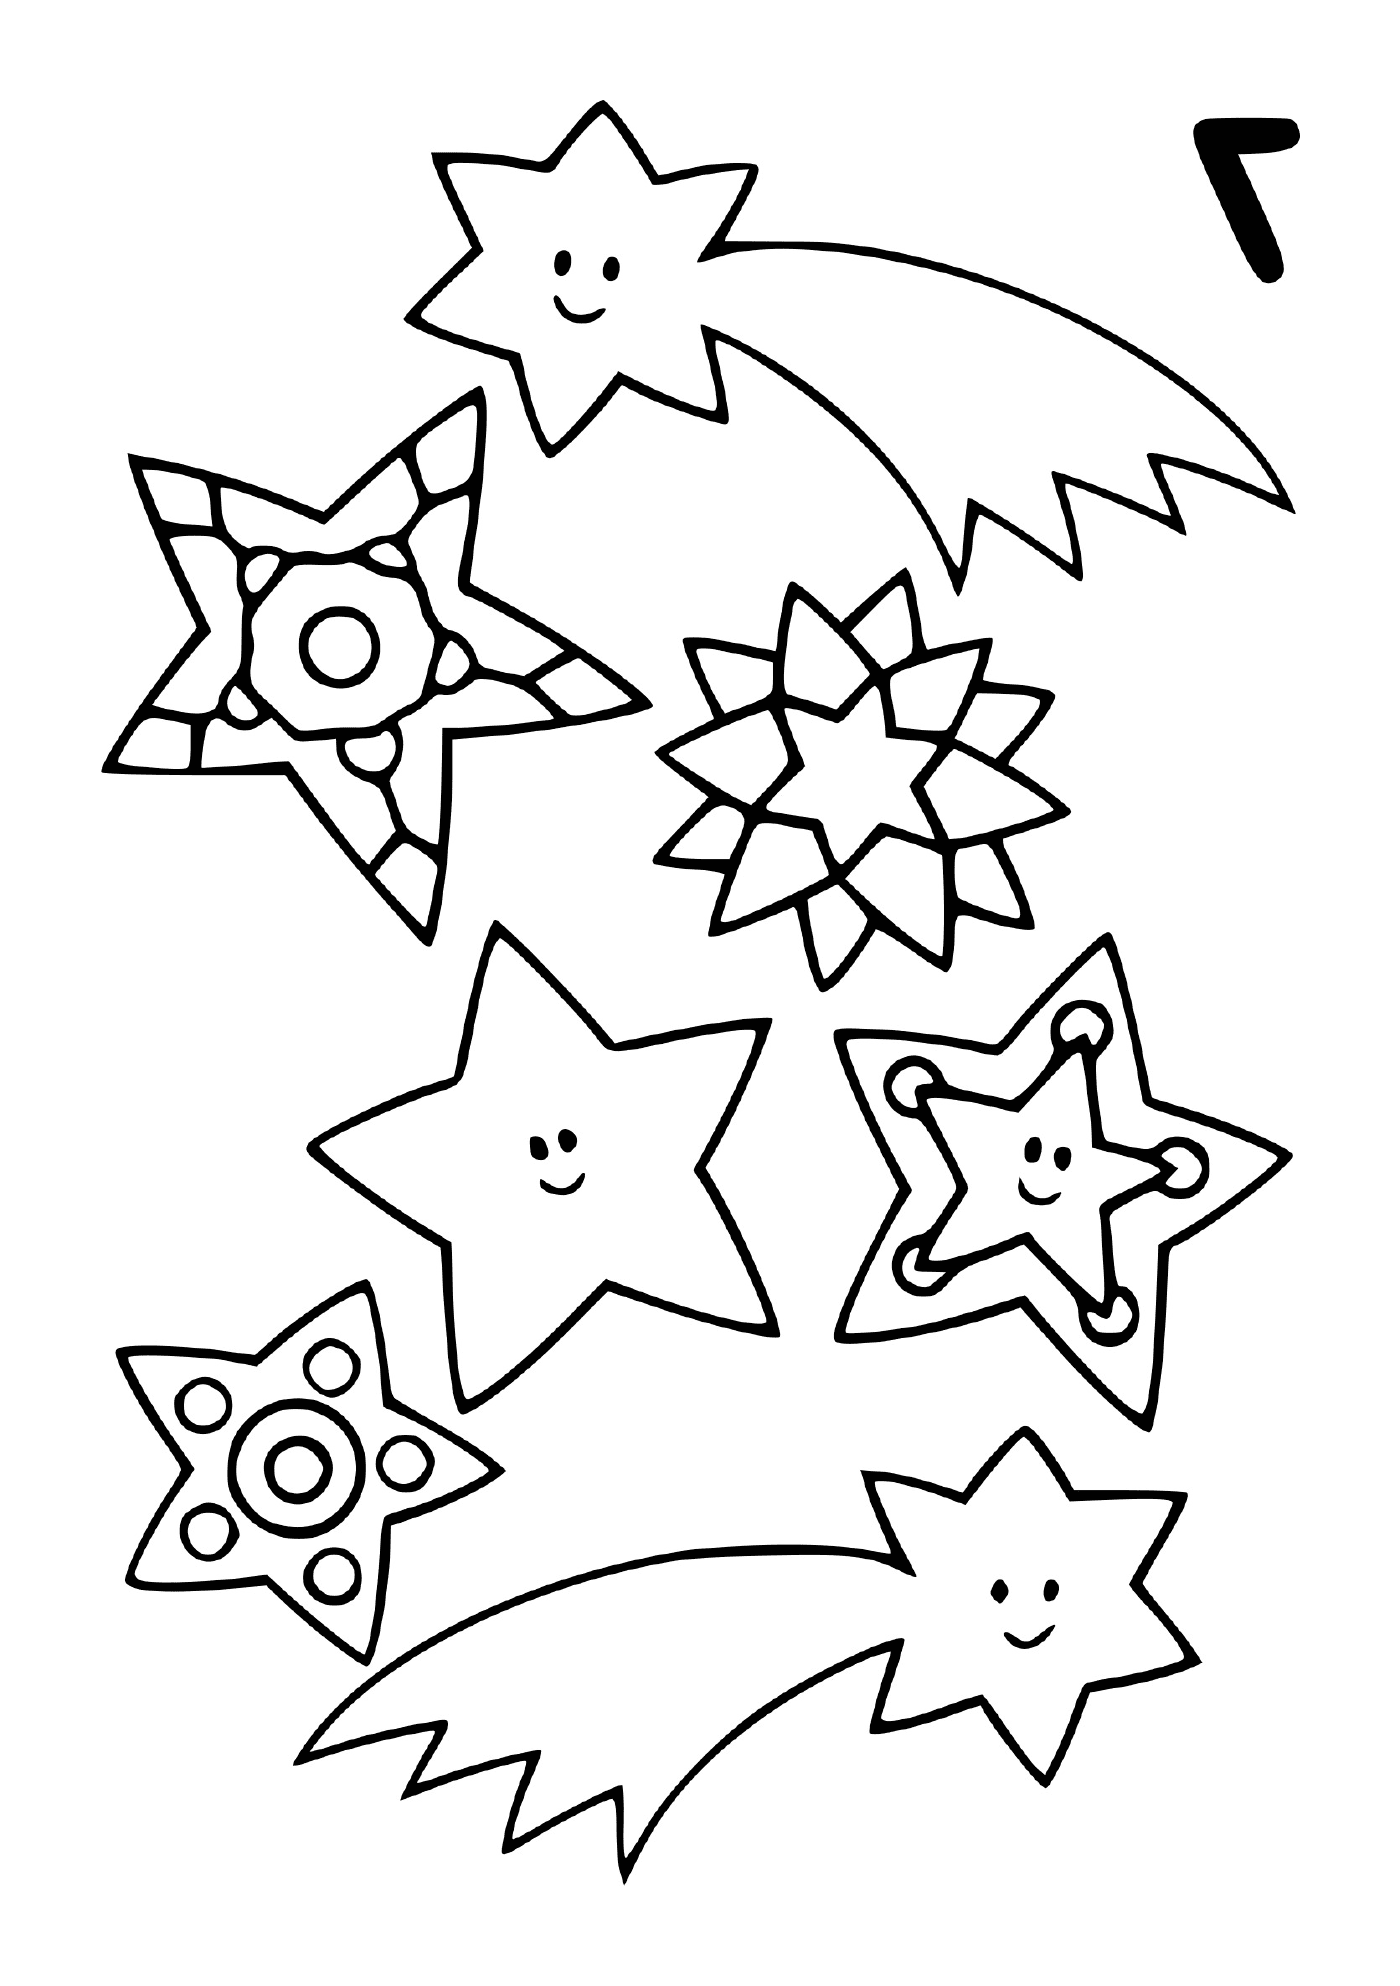  Un set di stelle cadenti in diverse forme 